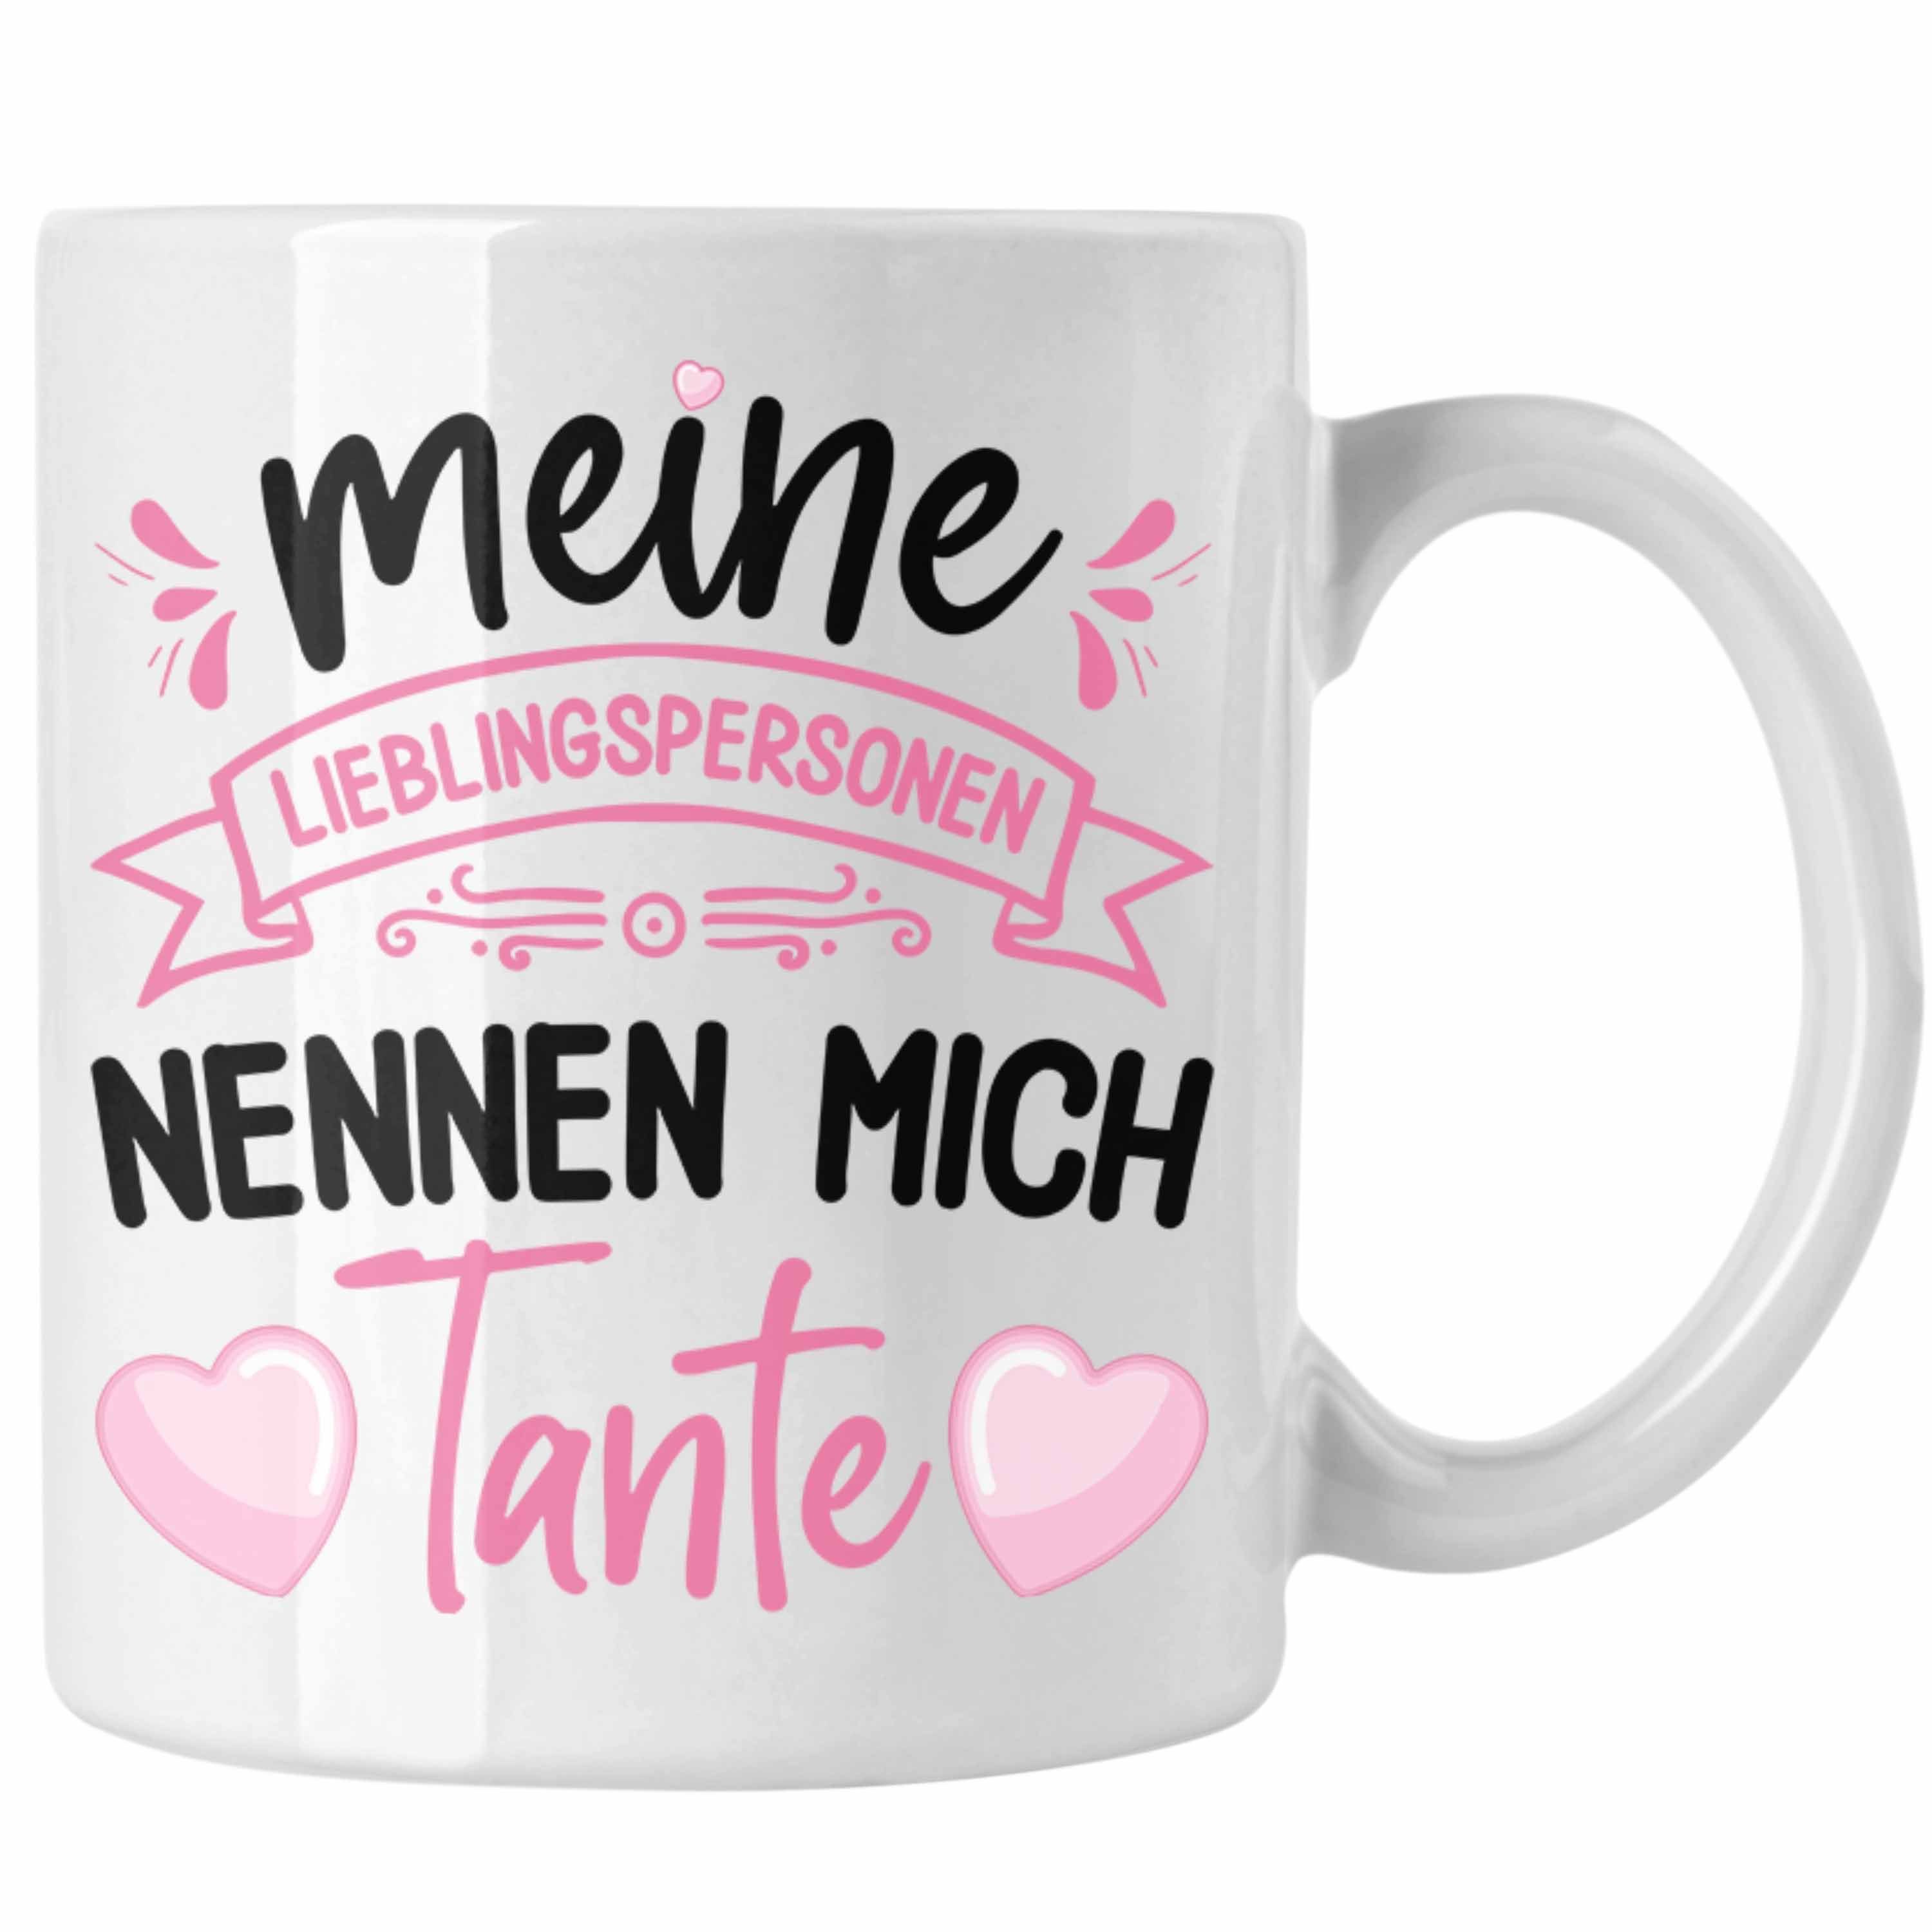 Trendation Tasse Trendation - Tante Geschenk Tasse Spruch Lustig Geschenkidee für Tante Geburtstag Weihnachten Weiss